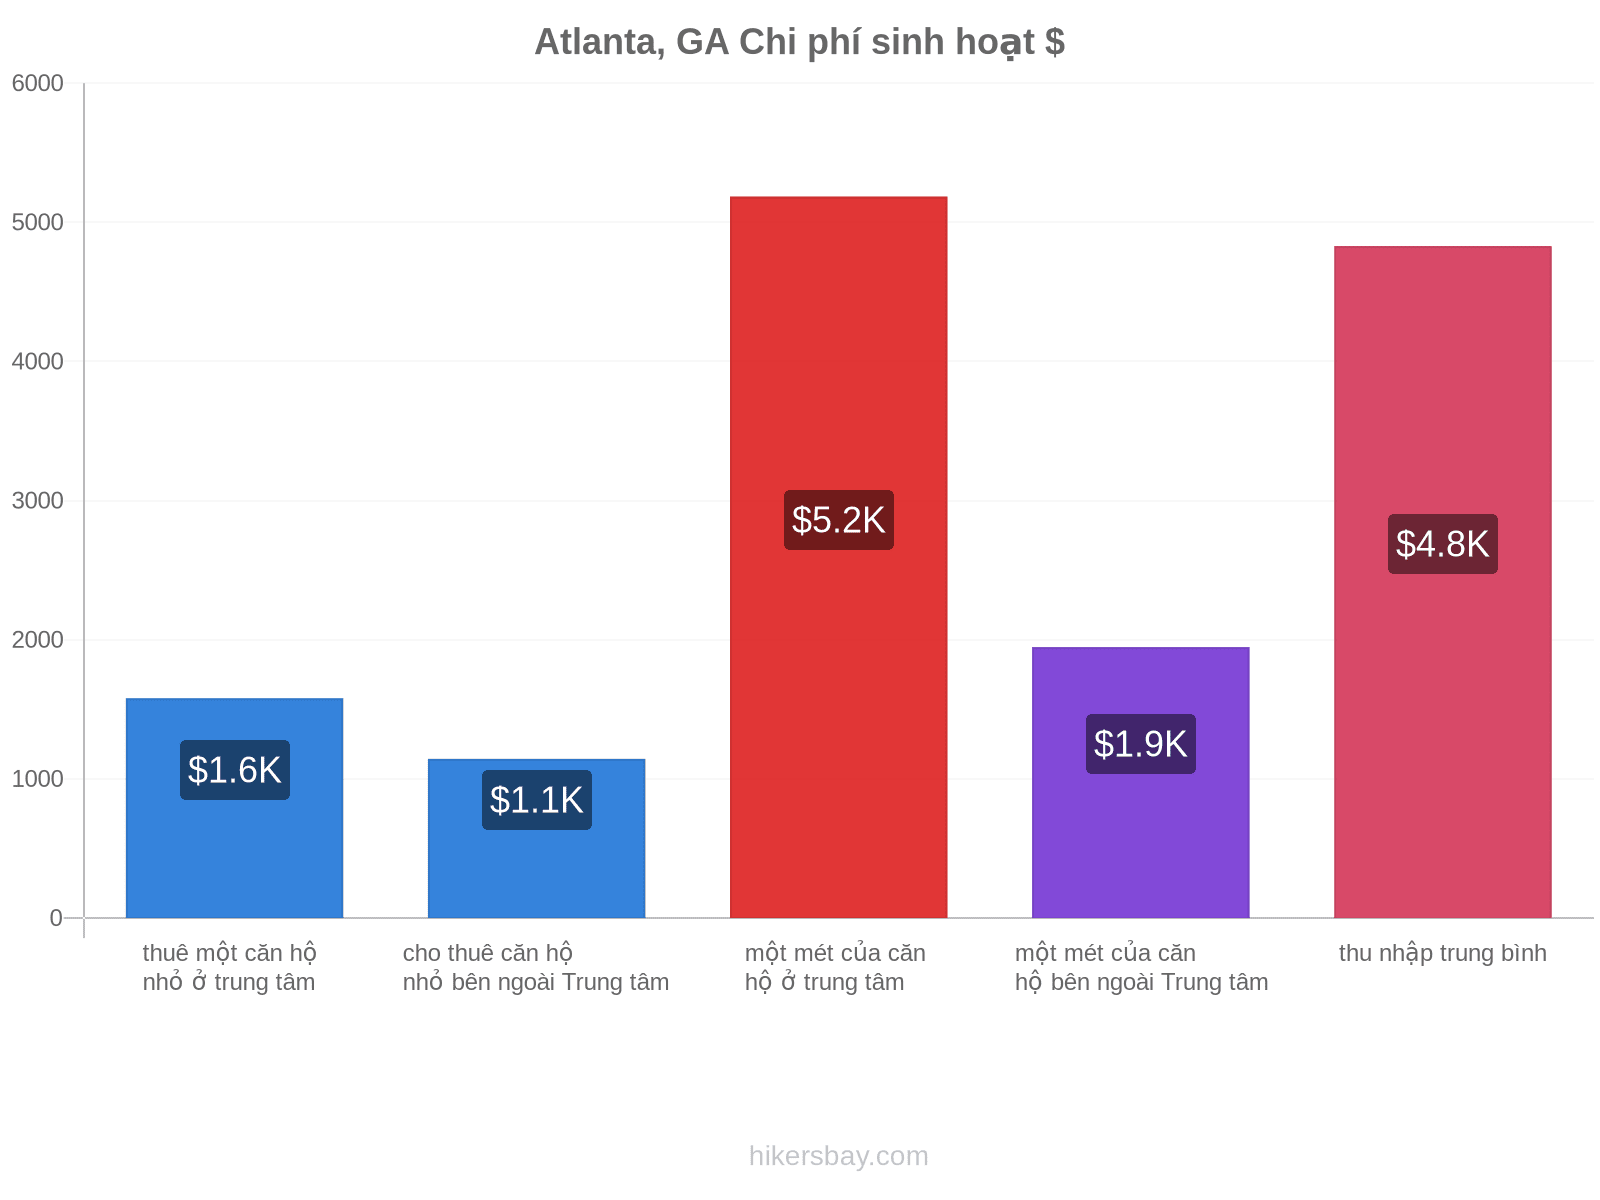 Atlanta, GA chi phí sinh hoạt hikersbay.com